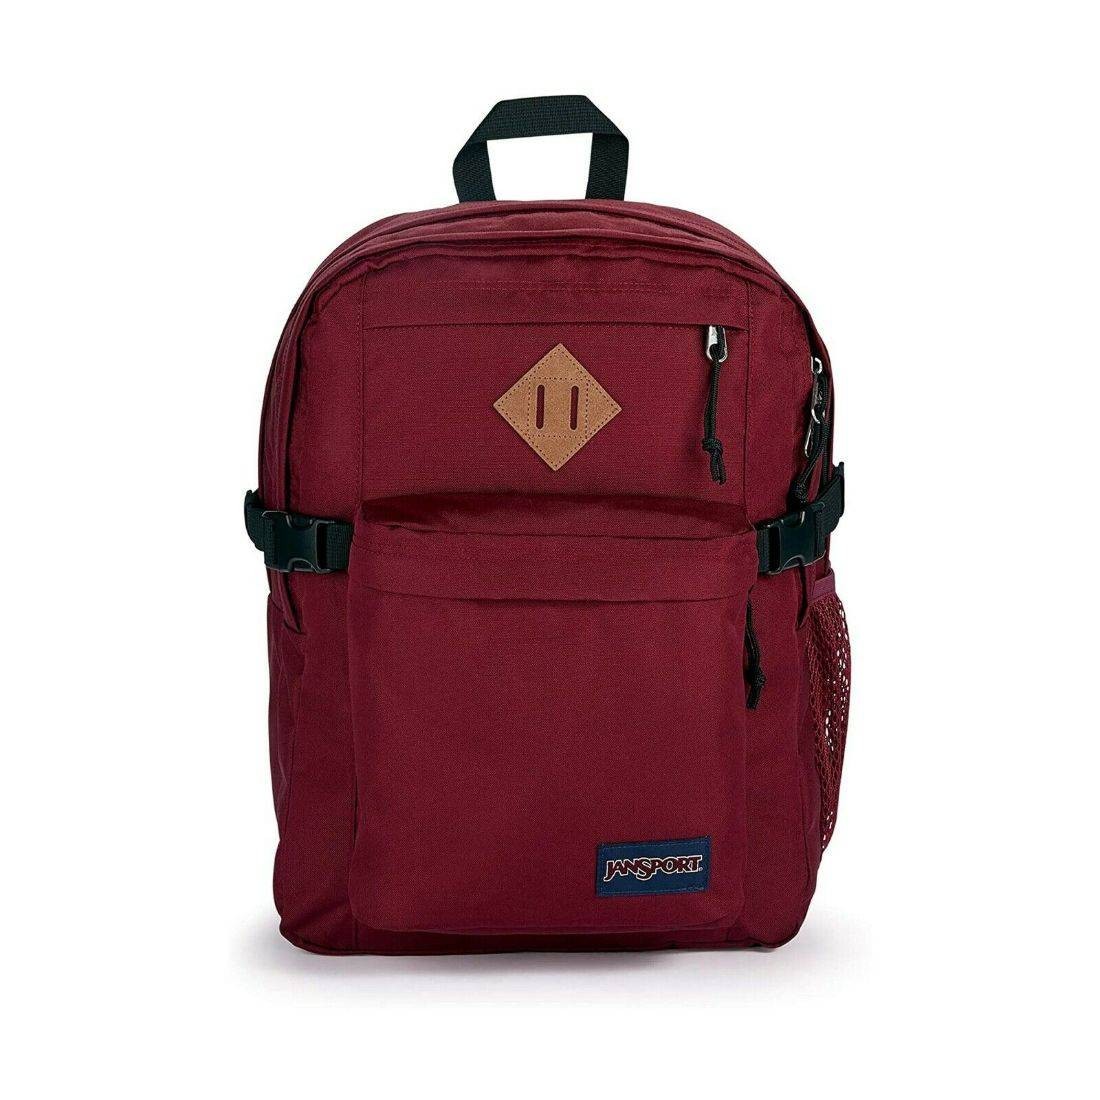 Buy Jansport Main Campus Russet Red Backpack - Jansport, delivered to ...